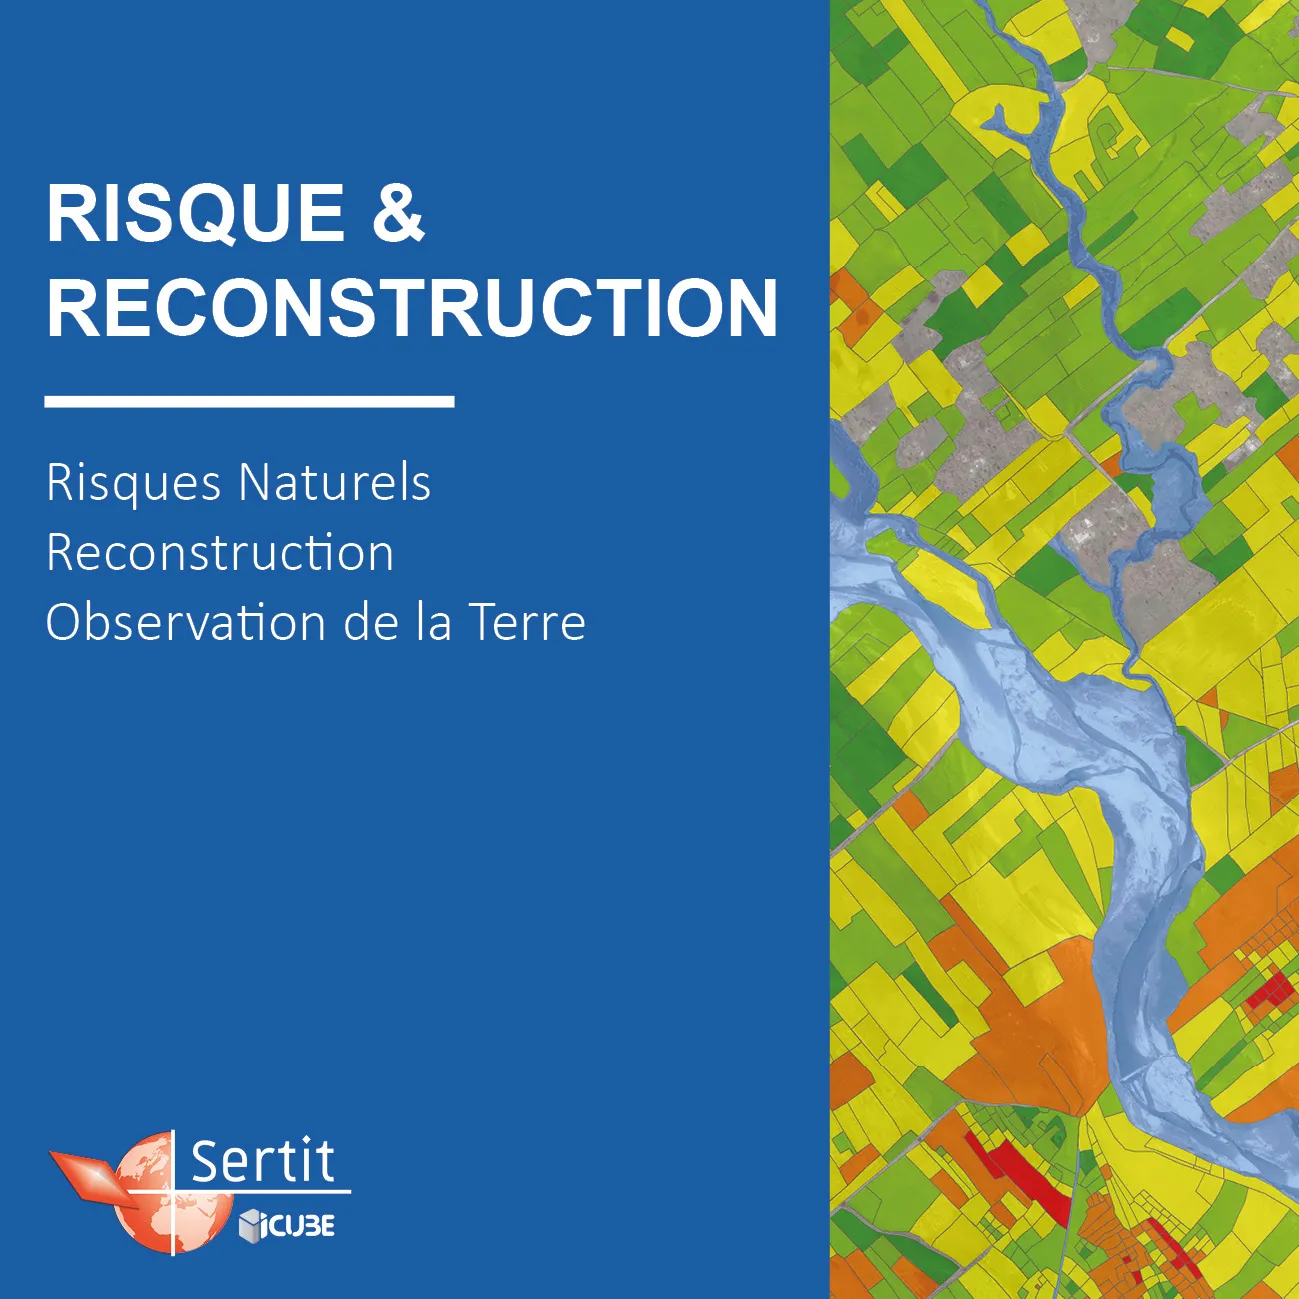 Risque & Reconstruction: Risques Naturels, Reconstruction, Observation de la Terre